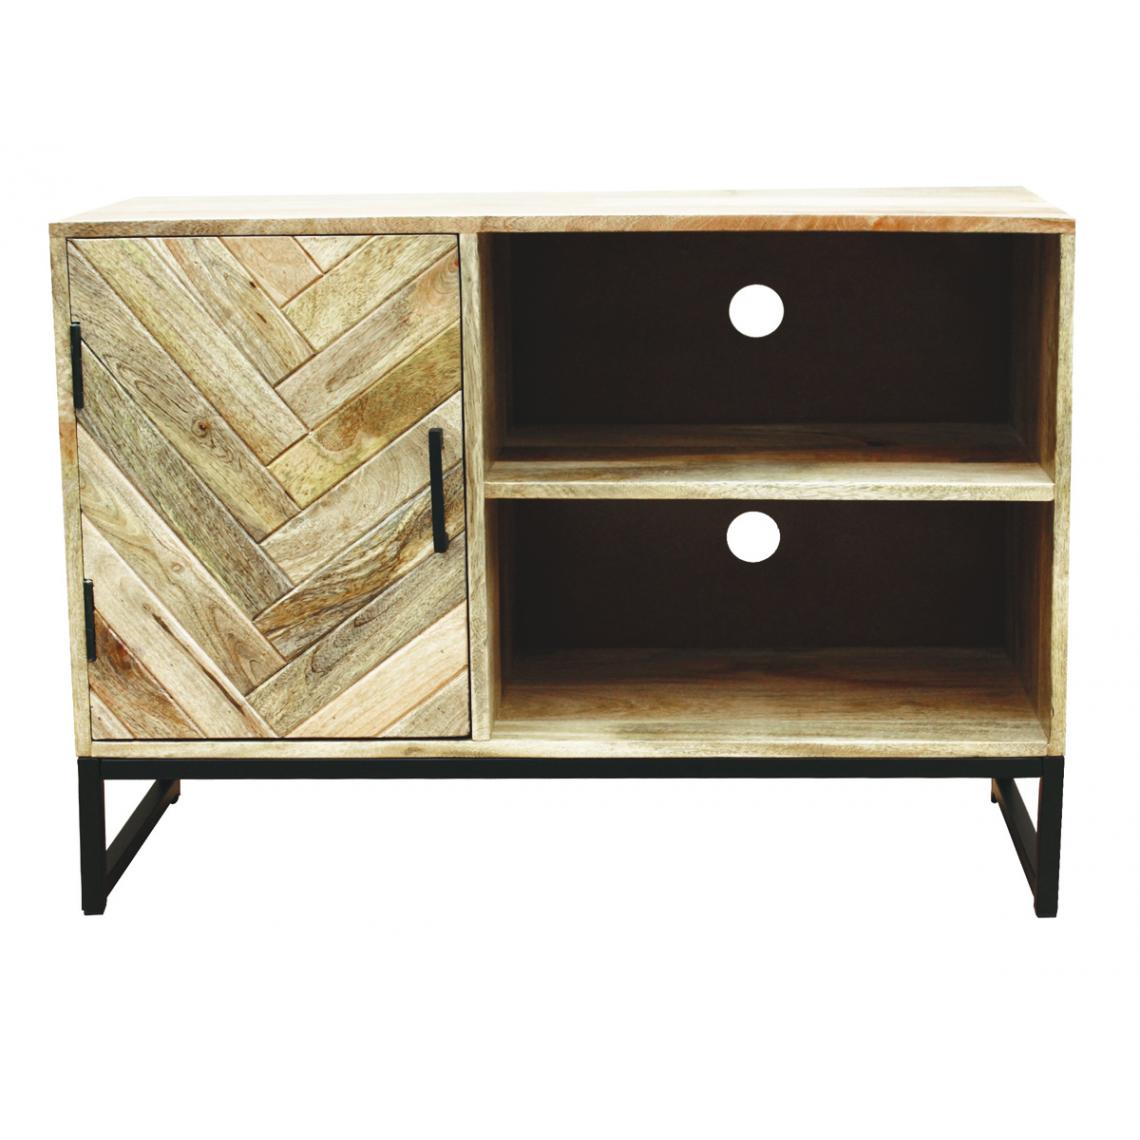 Pegane - Meuble TV en bois de manguier et acier laqué noir - Longueur 90 x profondeur 40 x hauteur 50 cm - Meubles TV, Hi-Fi